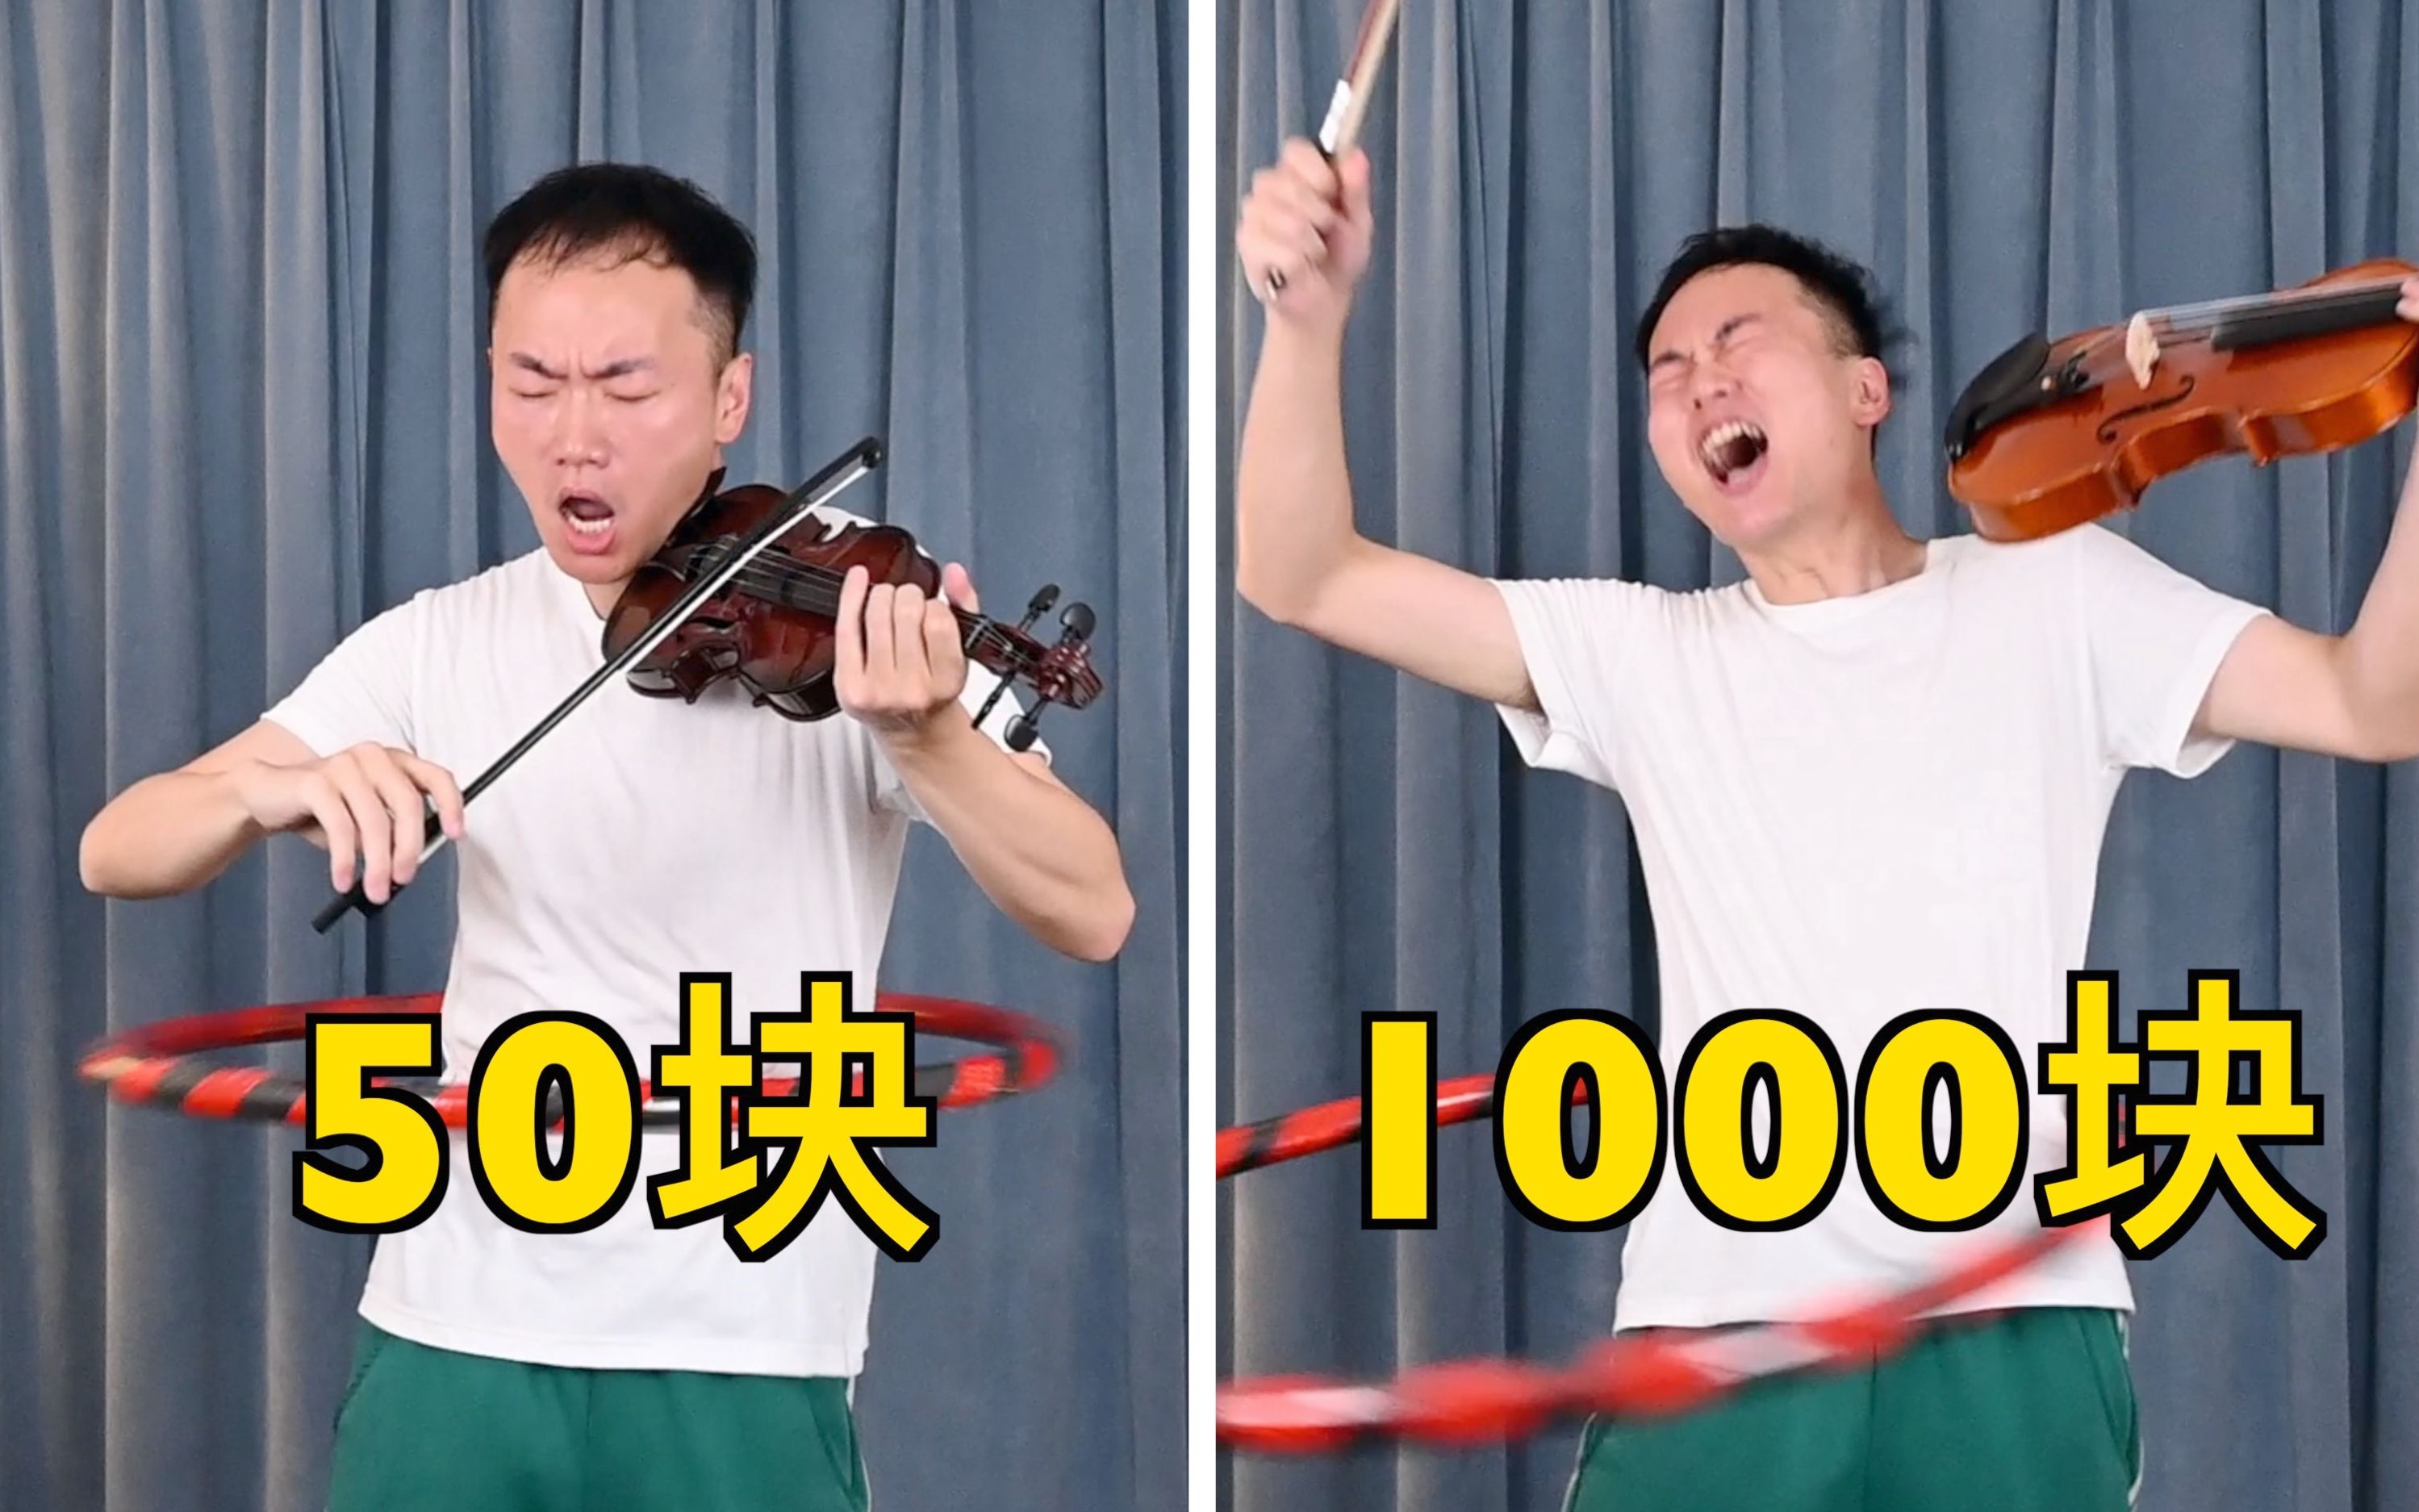 50块vs1000块的小提琴！哪一个比较猛？！